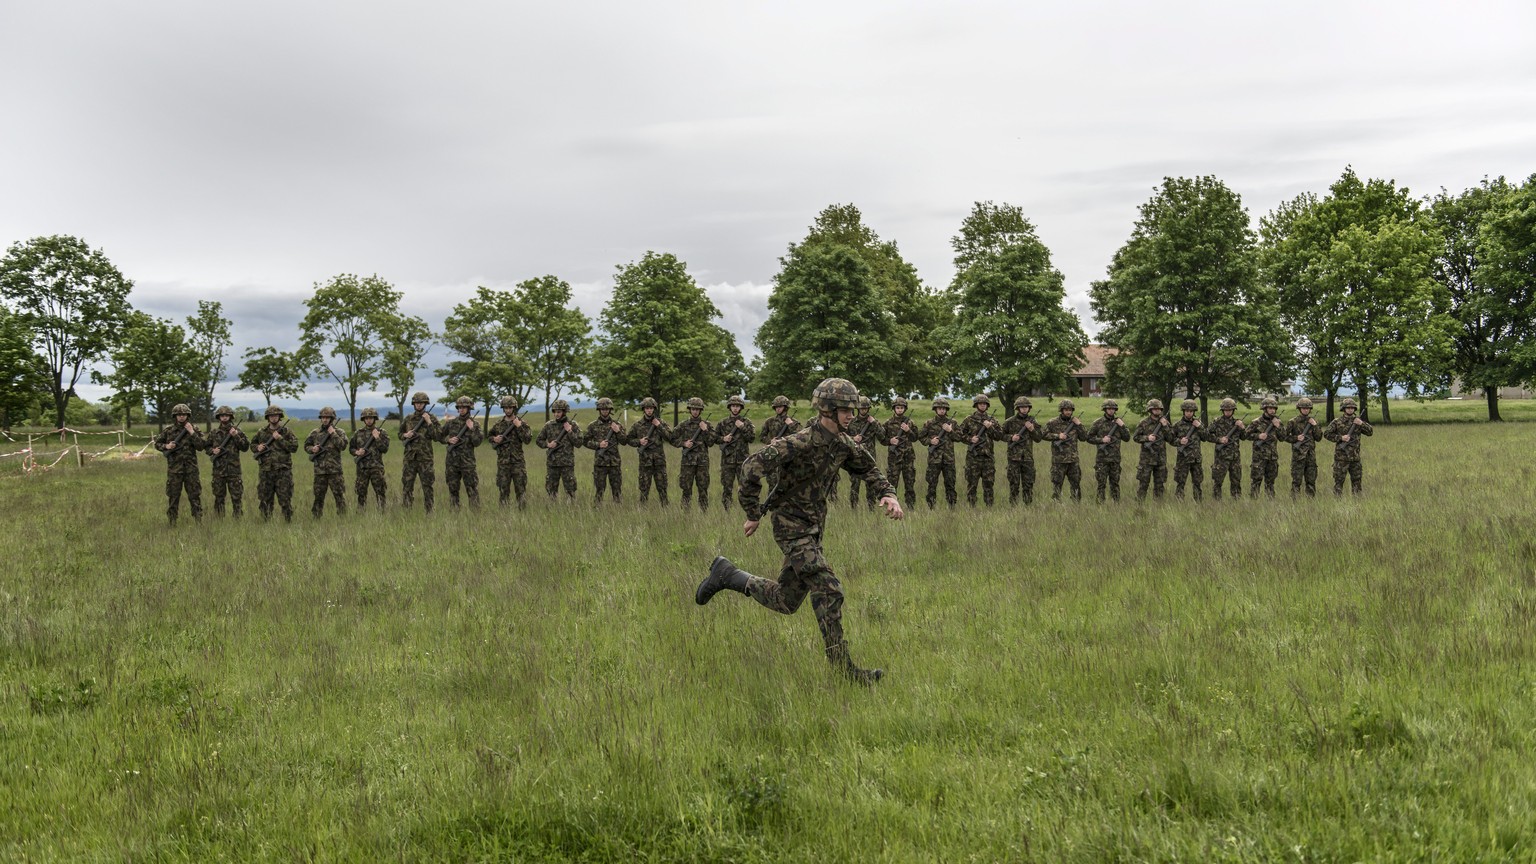 JAHRESRUECKBLICK 2013 - MAI - Rekruten der Infanterie stehen auf der gruenen Wiese in Reih und Glied, waehrend ein weiterer Rekrut vorbeisprintet, aufgenommen am 17. Mai in der Infanterie RS 5 (Rekrut ...